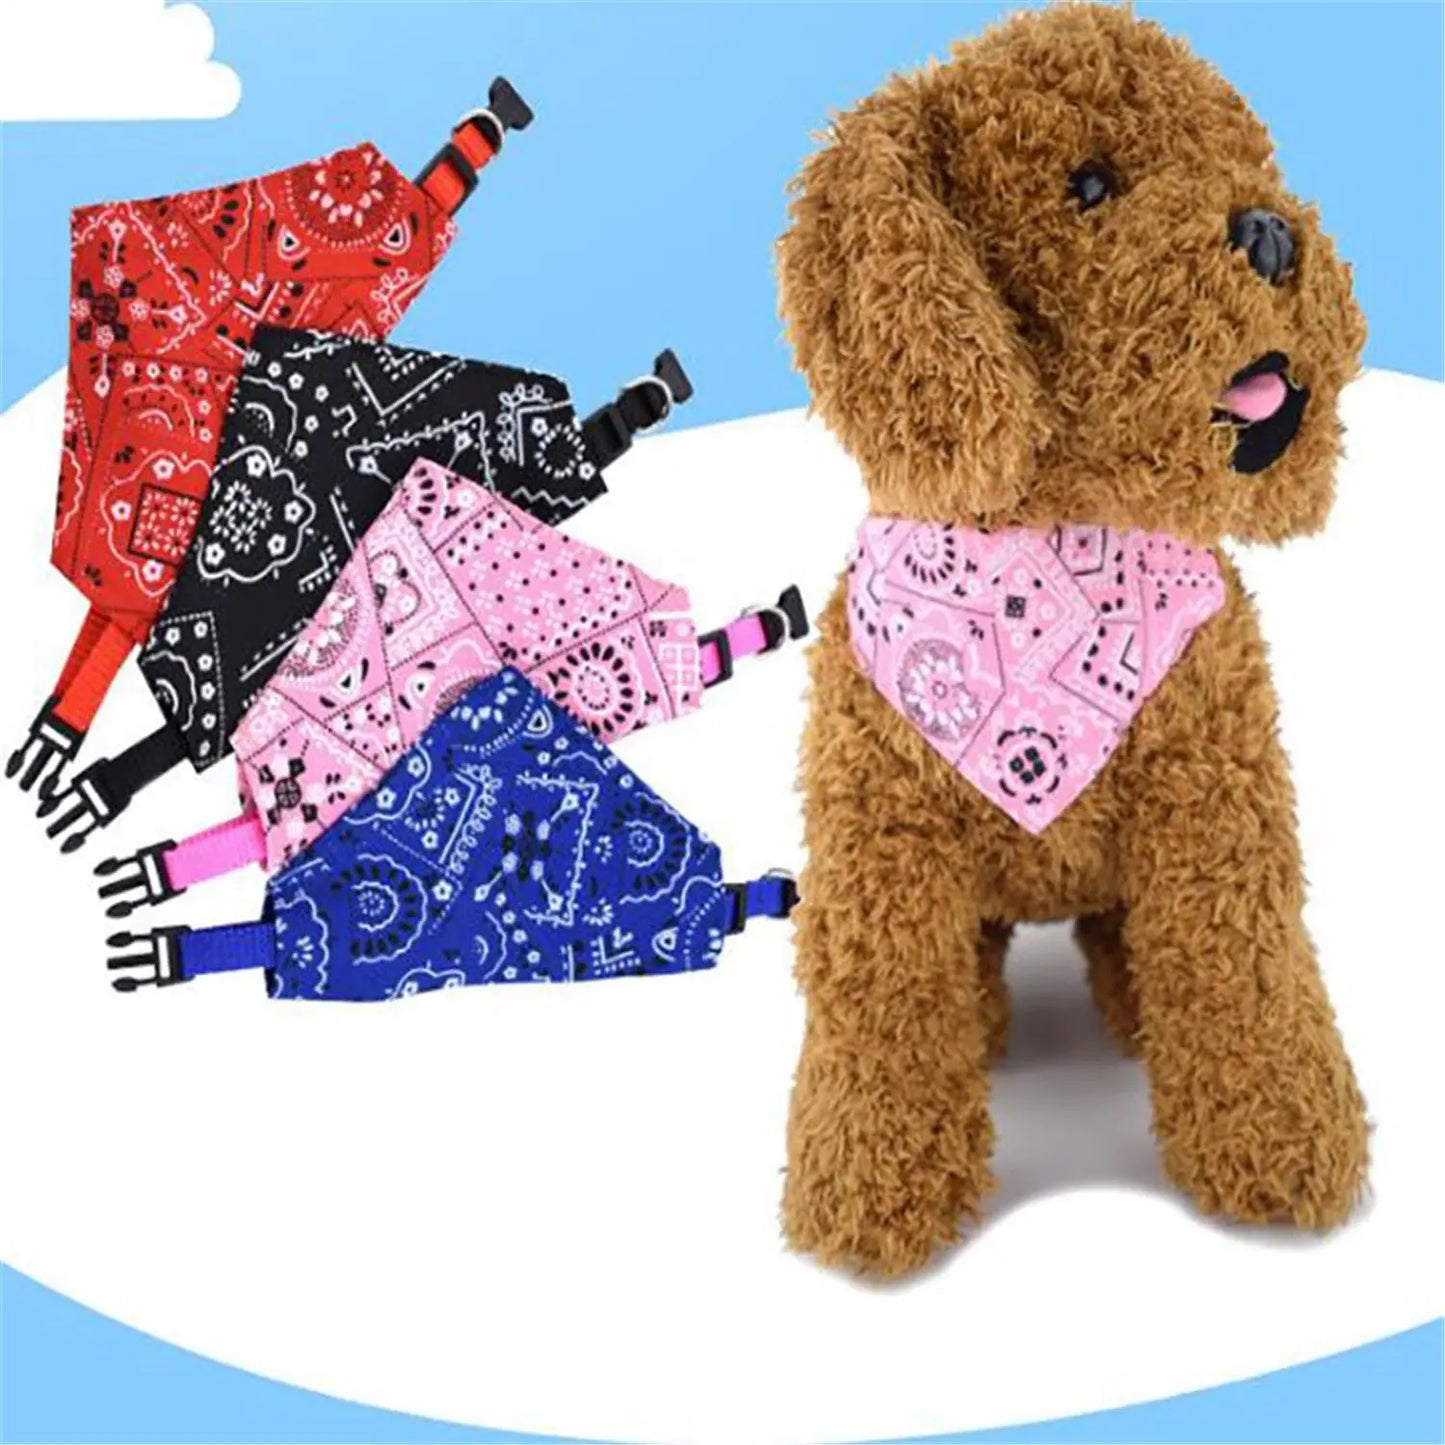 Adjustable Triangular Bandage For Pet Dog Cat Washable Scarf Bandana Collar Bibs Cat Neck Decor Birthday Party Dress Up